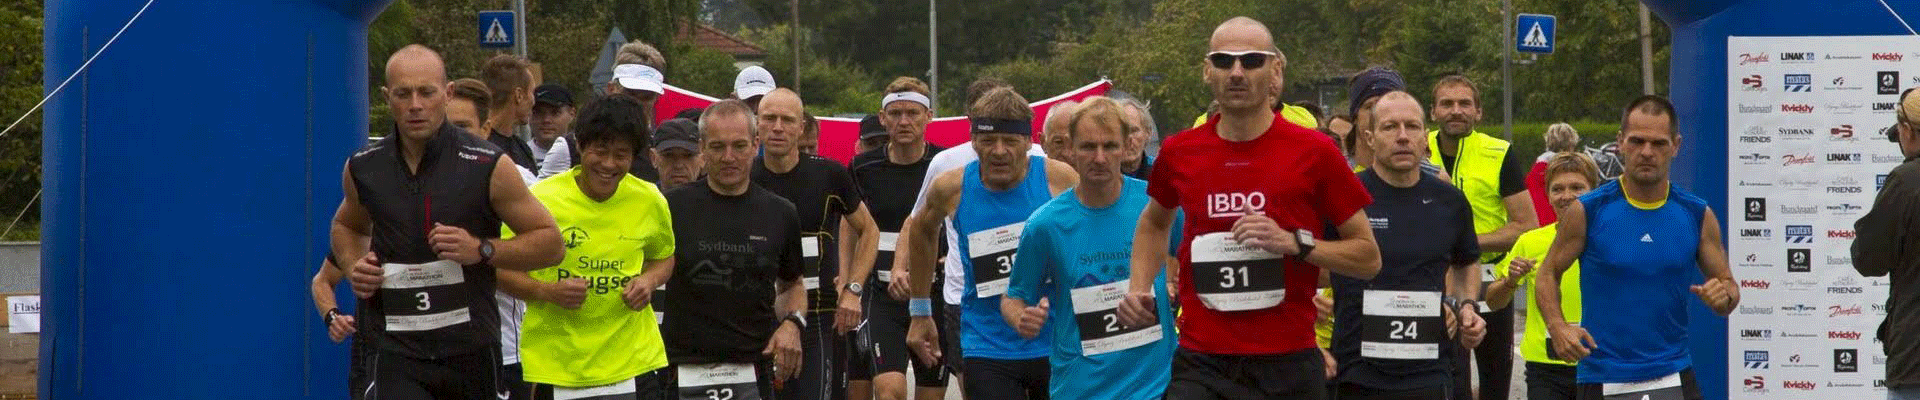 Nordborg Marathon 2018